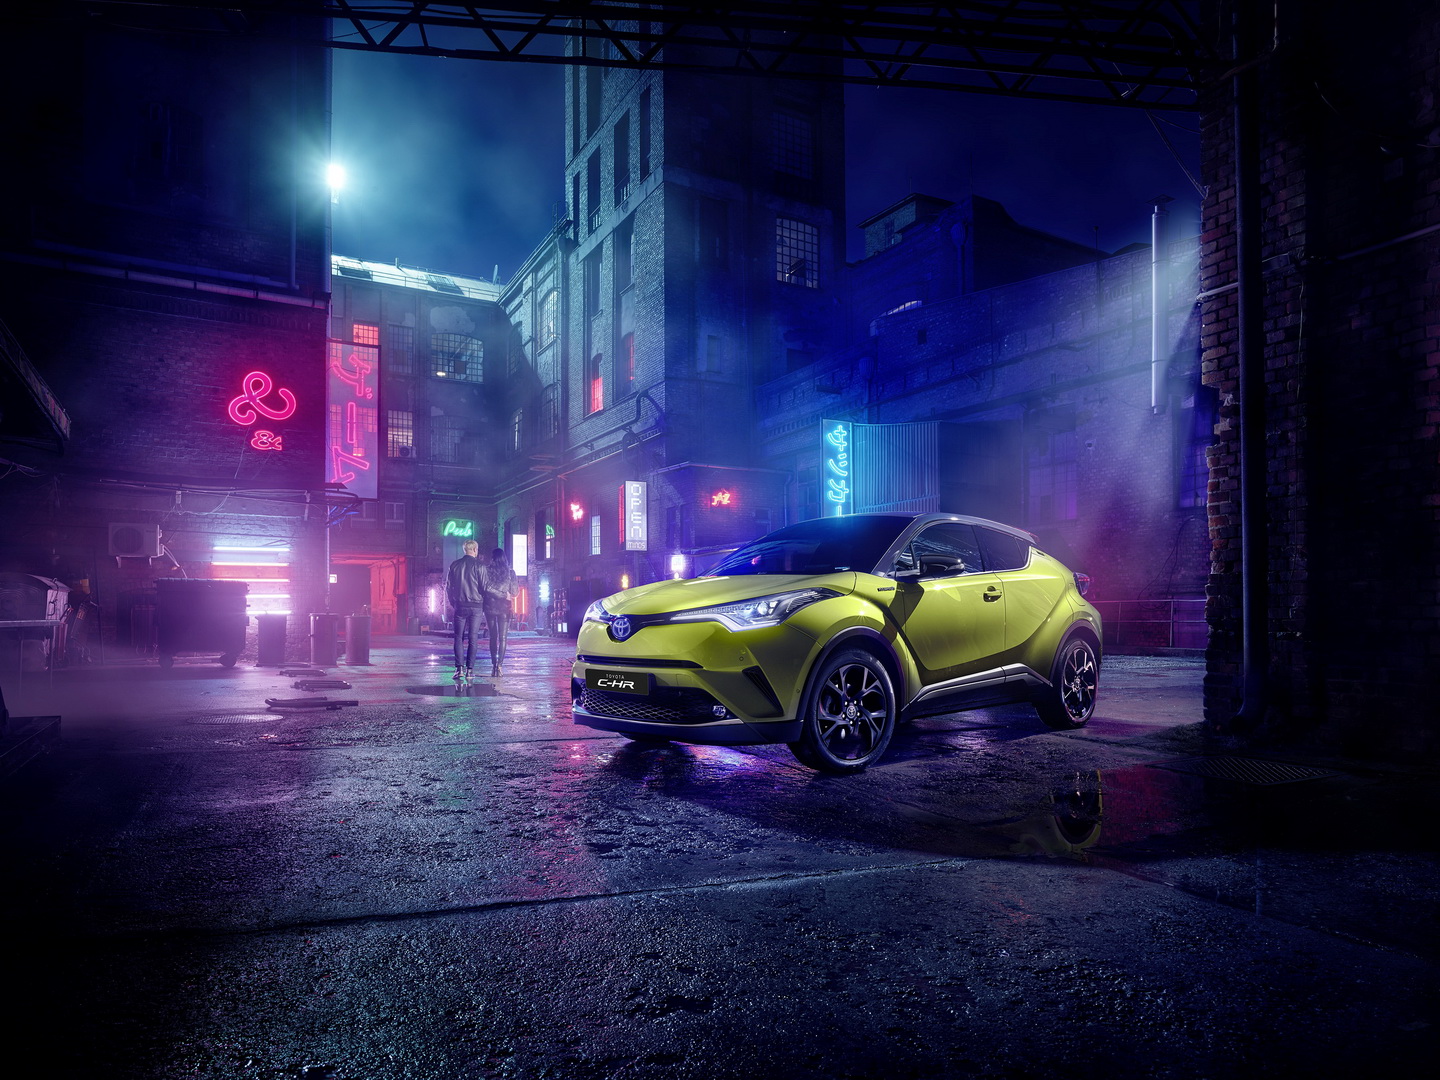 Toyota C-HR Neon Lime รุ่นพิเศษ เคาะราคา 920,000 บาทในยุโรป